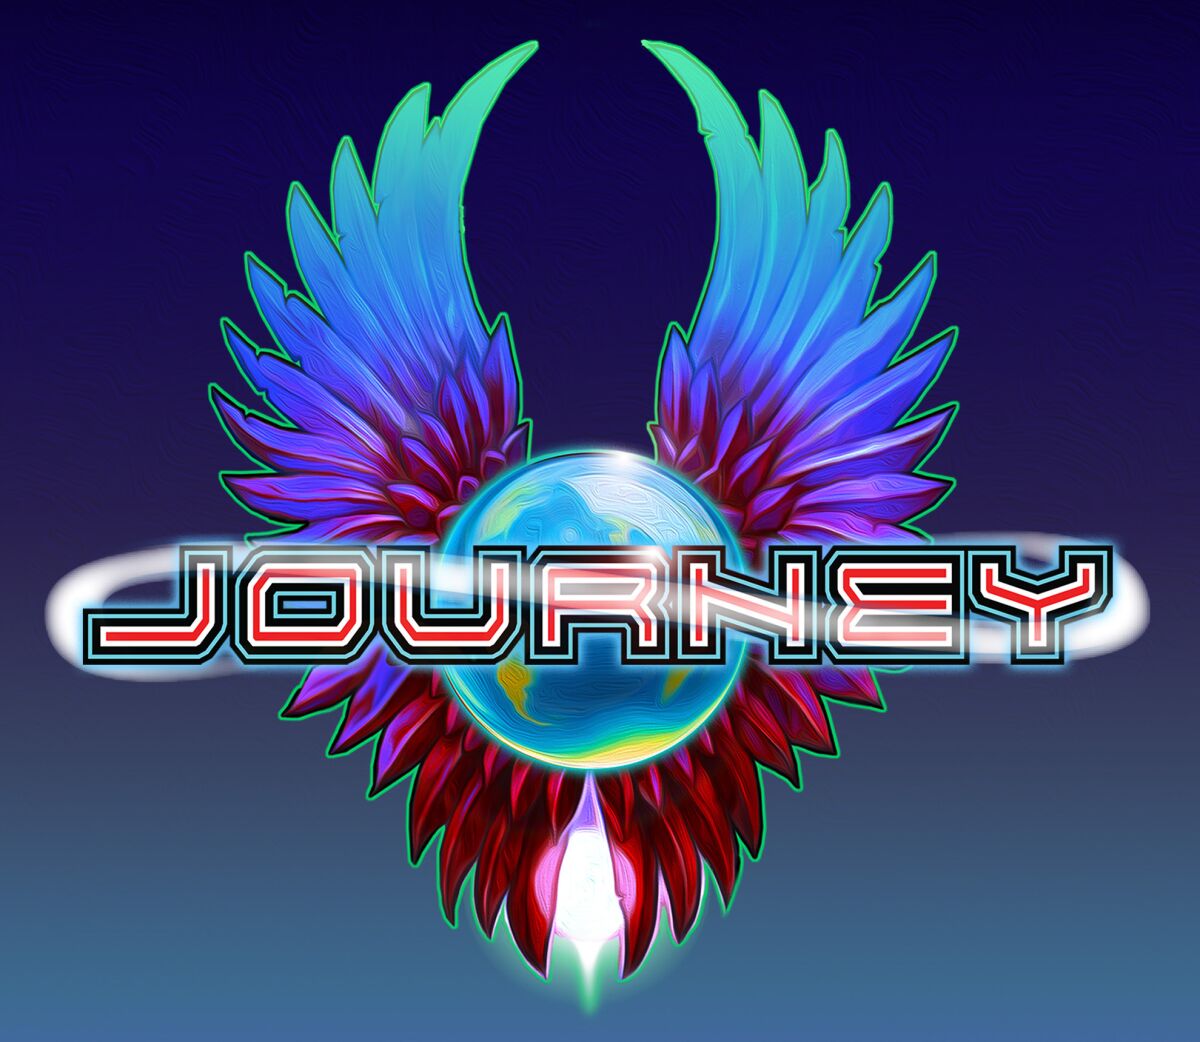 journey rock band logo